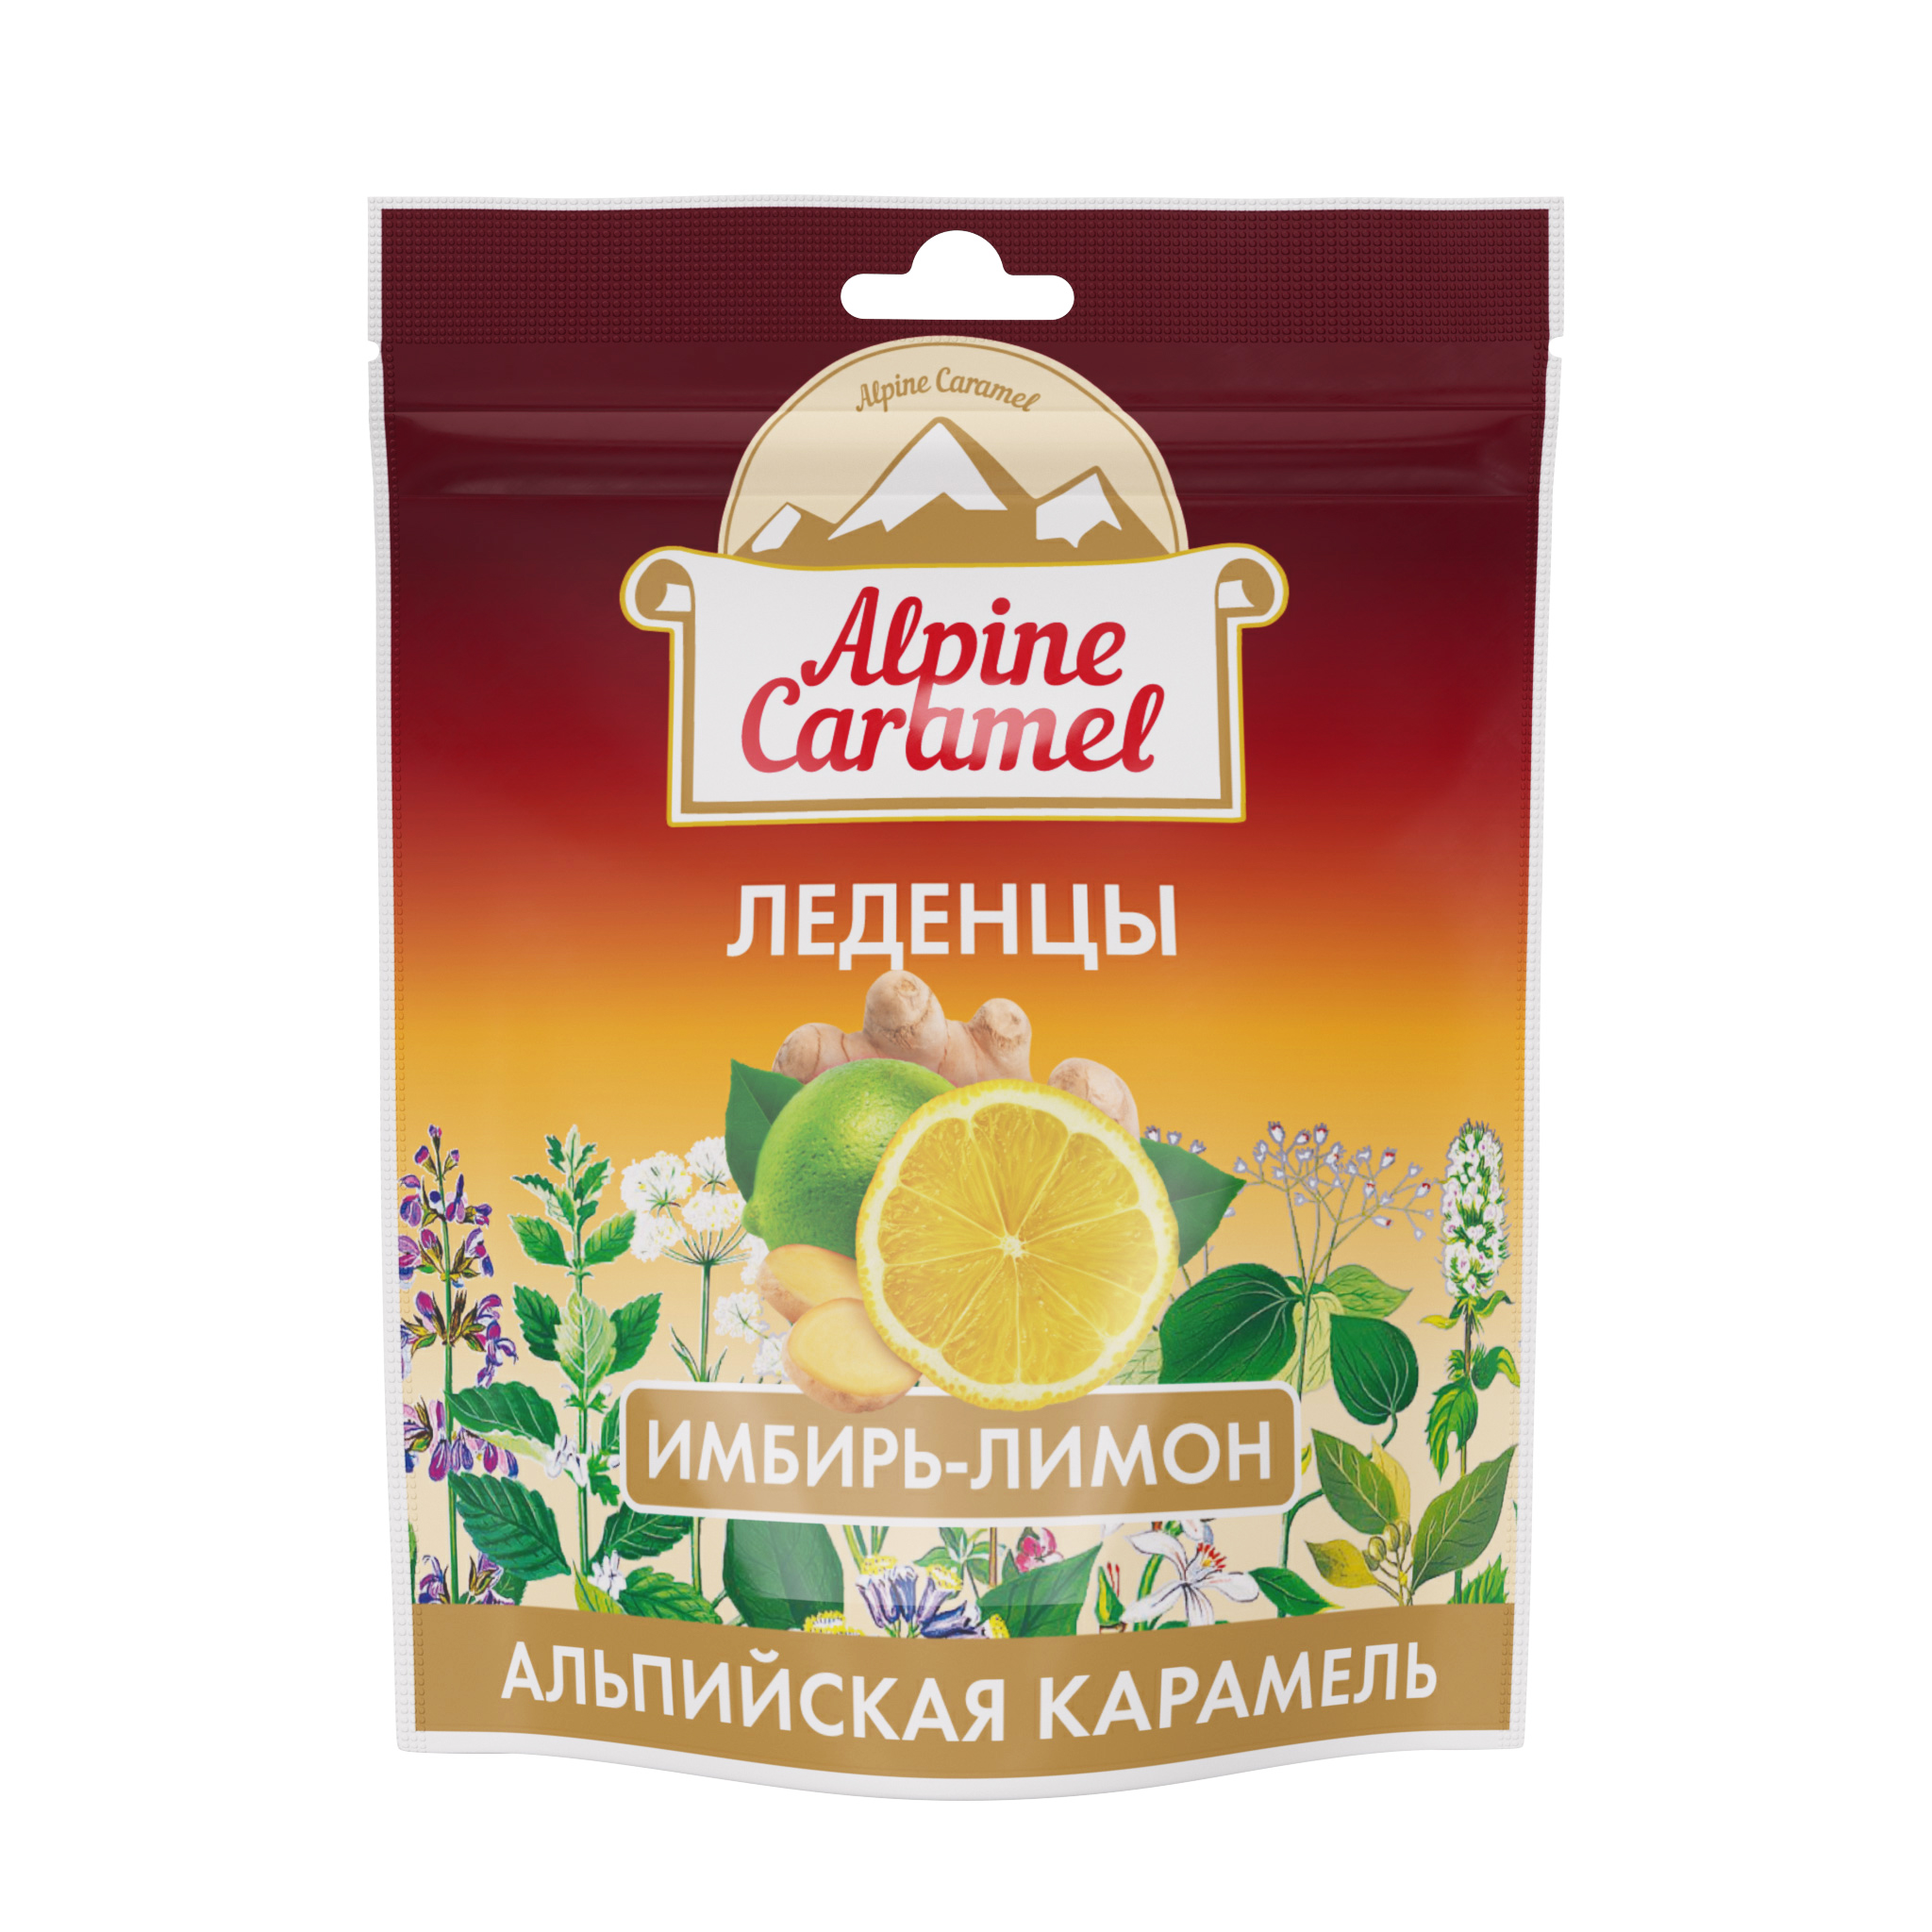 Alpine Caramel, леденцы со вкусом имбирь-лимон, 75 г